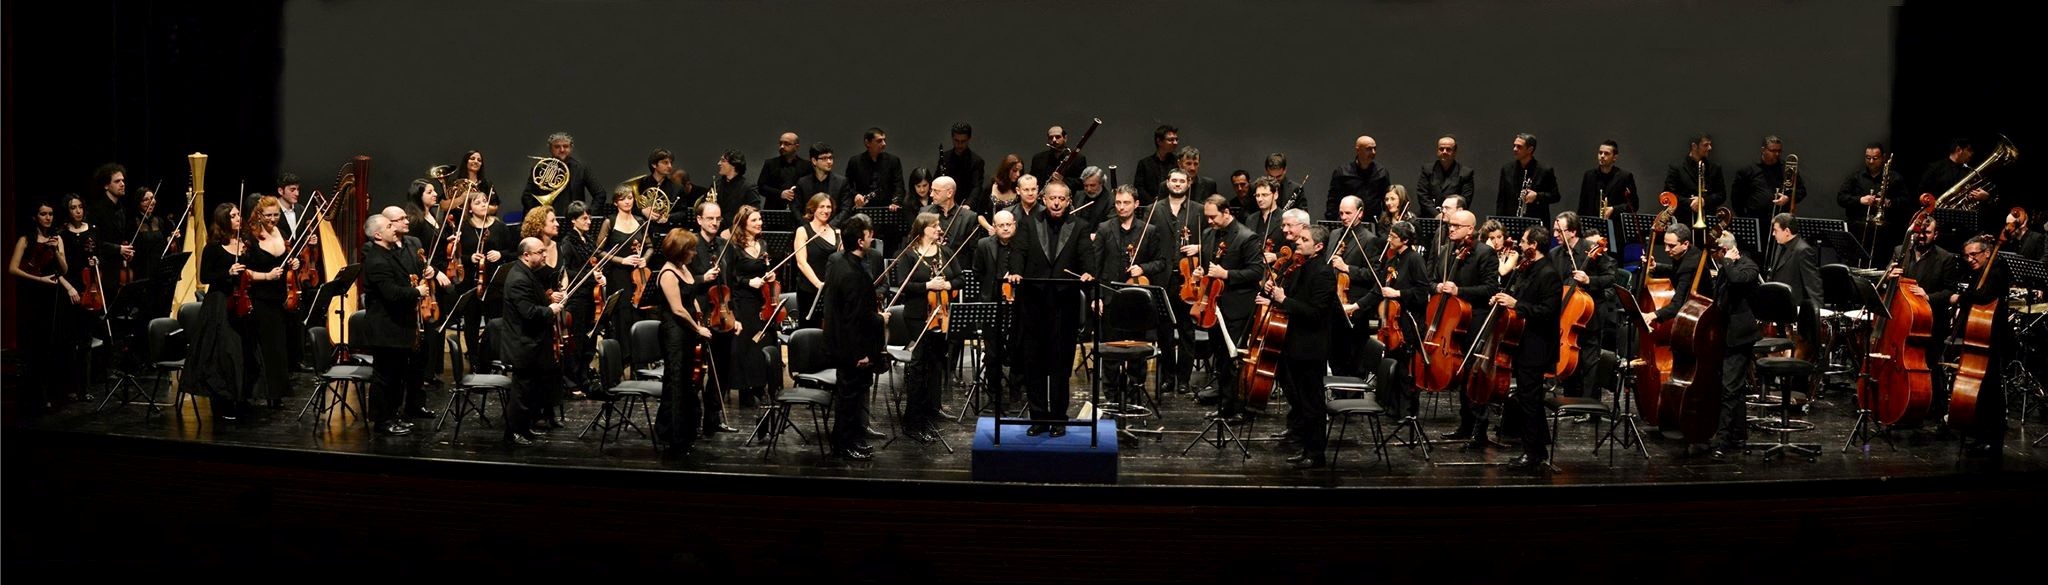 orchestra-sinfonica-della-citta-metropolitana-di-bari-1